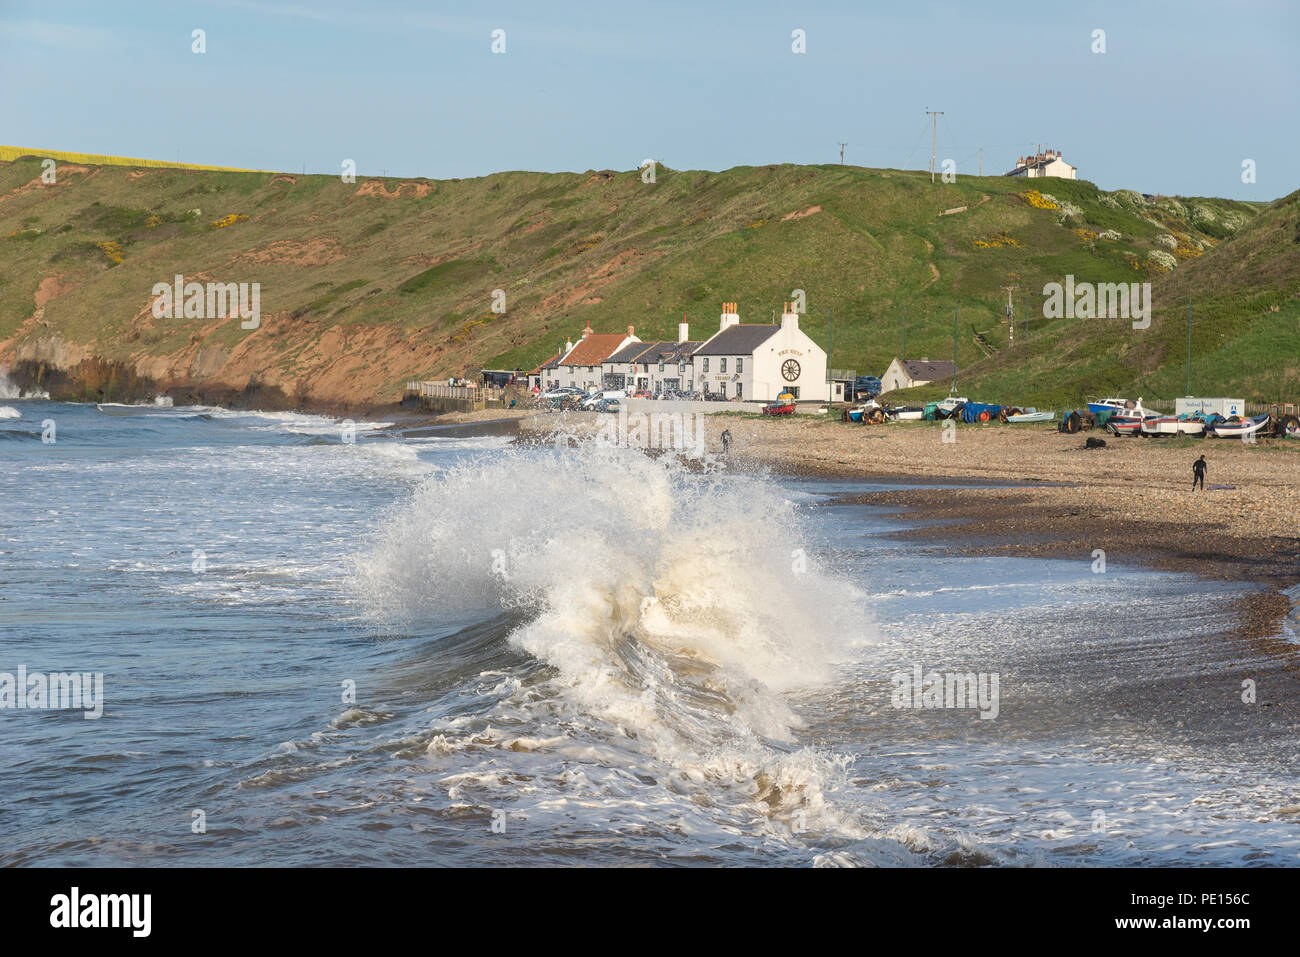 Grandi onde che si infrangono sulla spiaggia di cambs sulla costa del North Yorkshire, Inghilterra. Un bel pomeriggio di primavera. Foto Stock